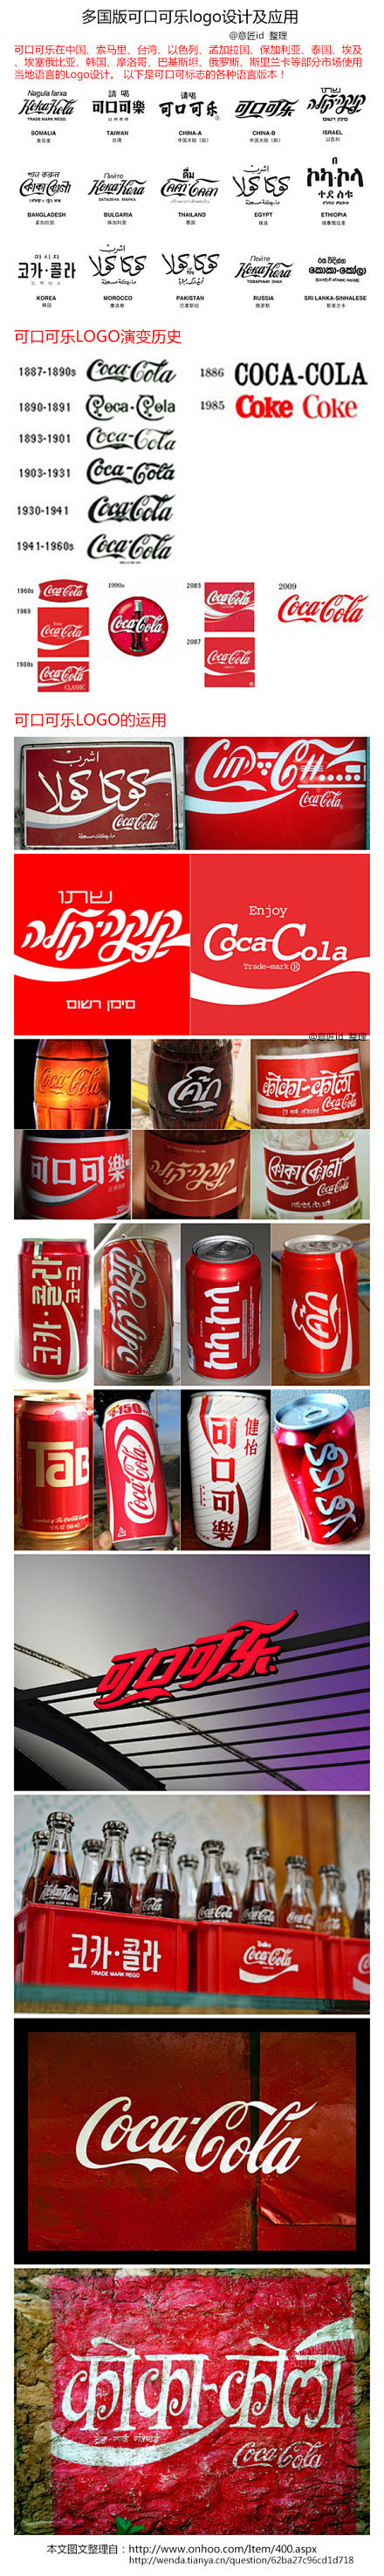 可口可乐logo的多国版设计及应用。